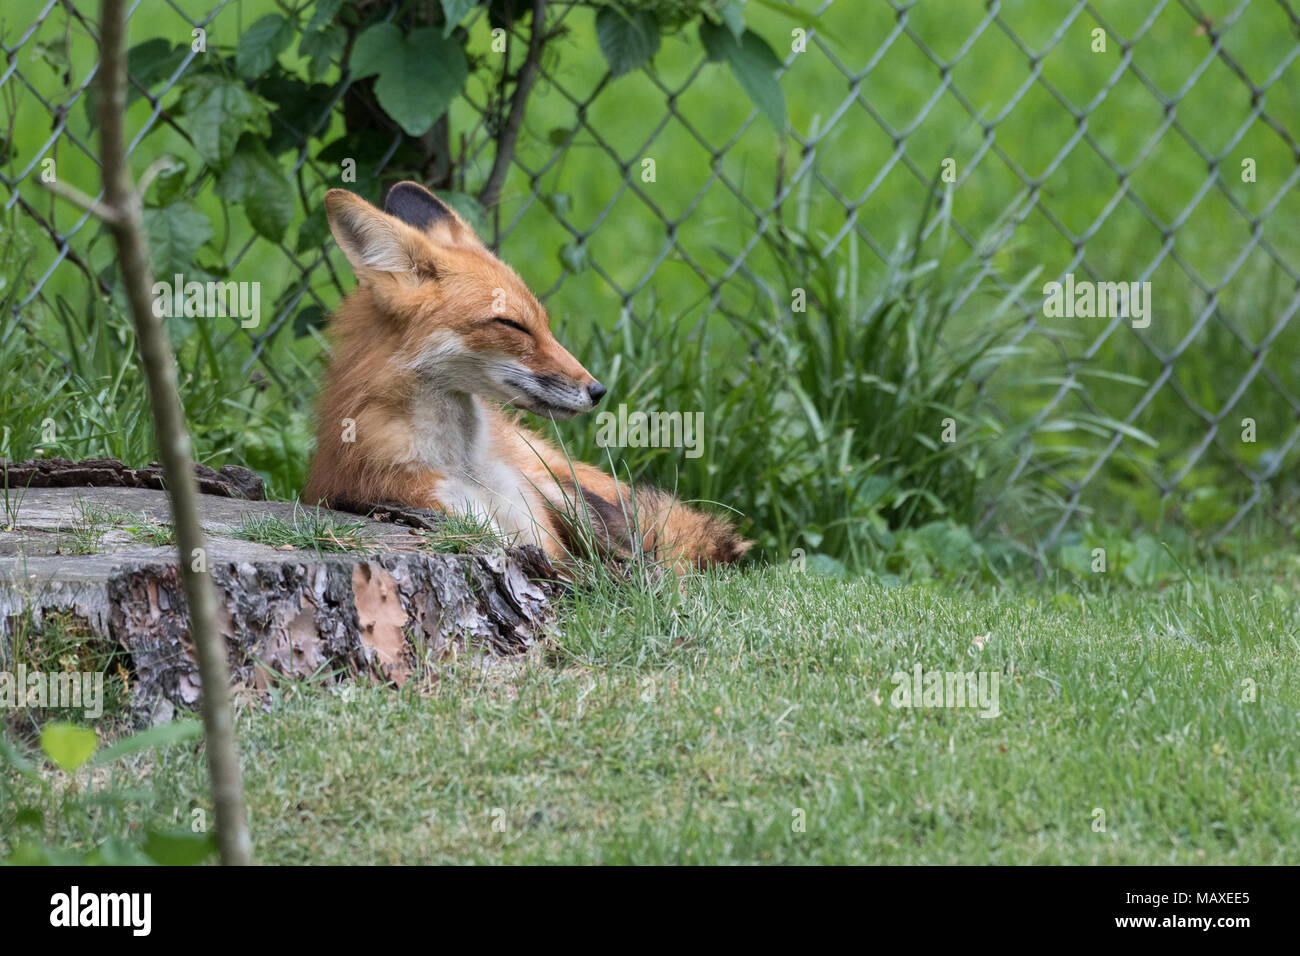 A drowsing red fox vixen in an urban environment. Stock Photo